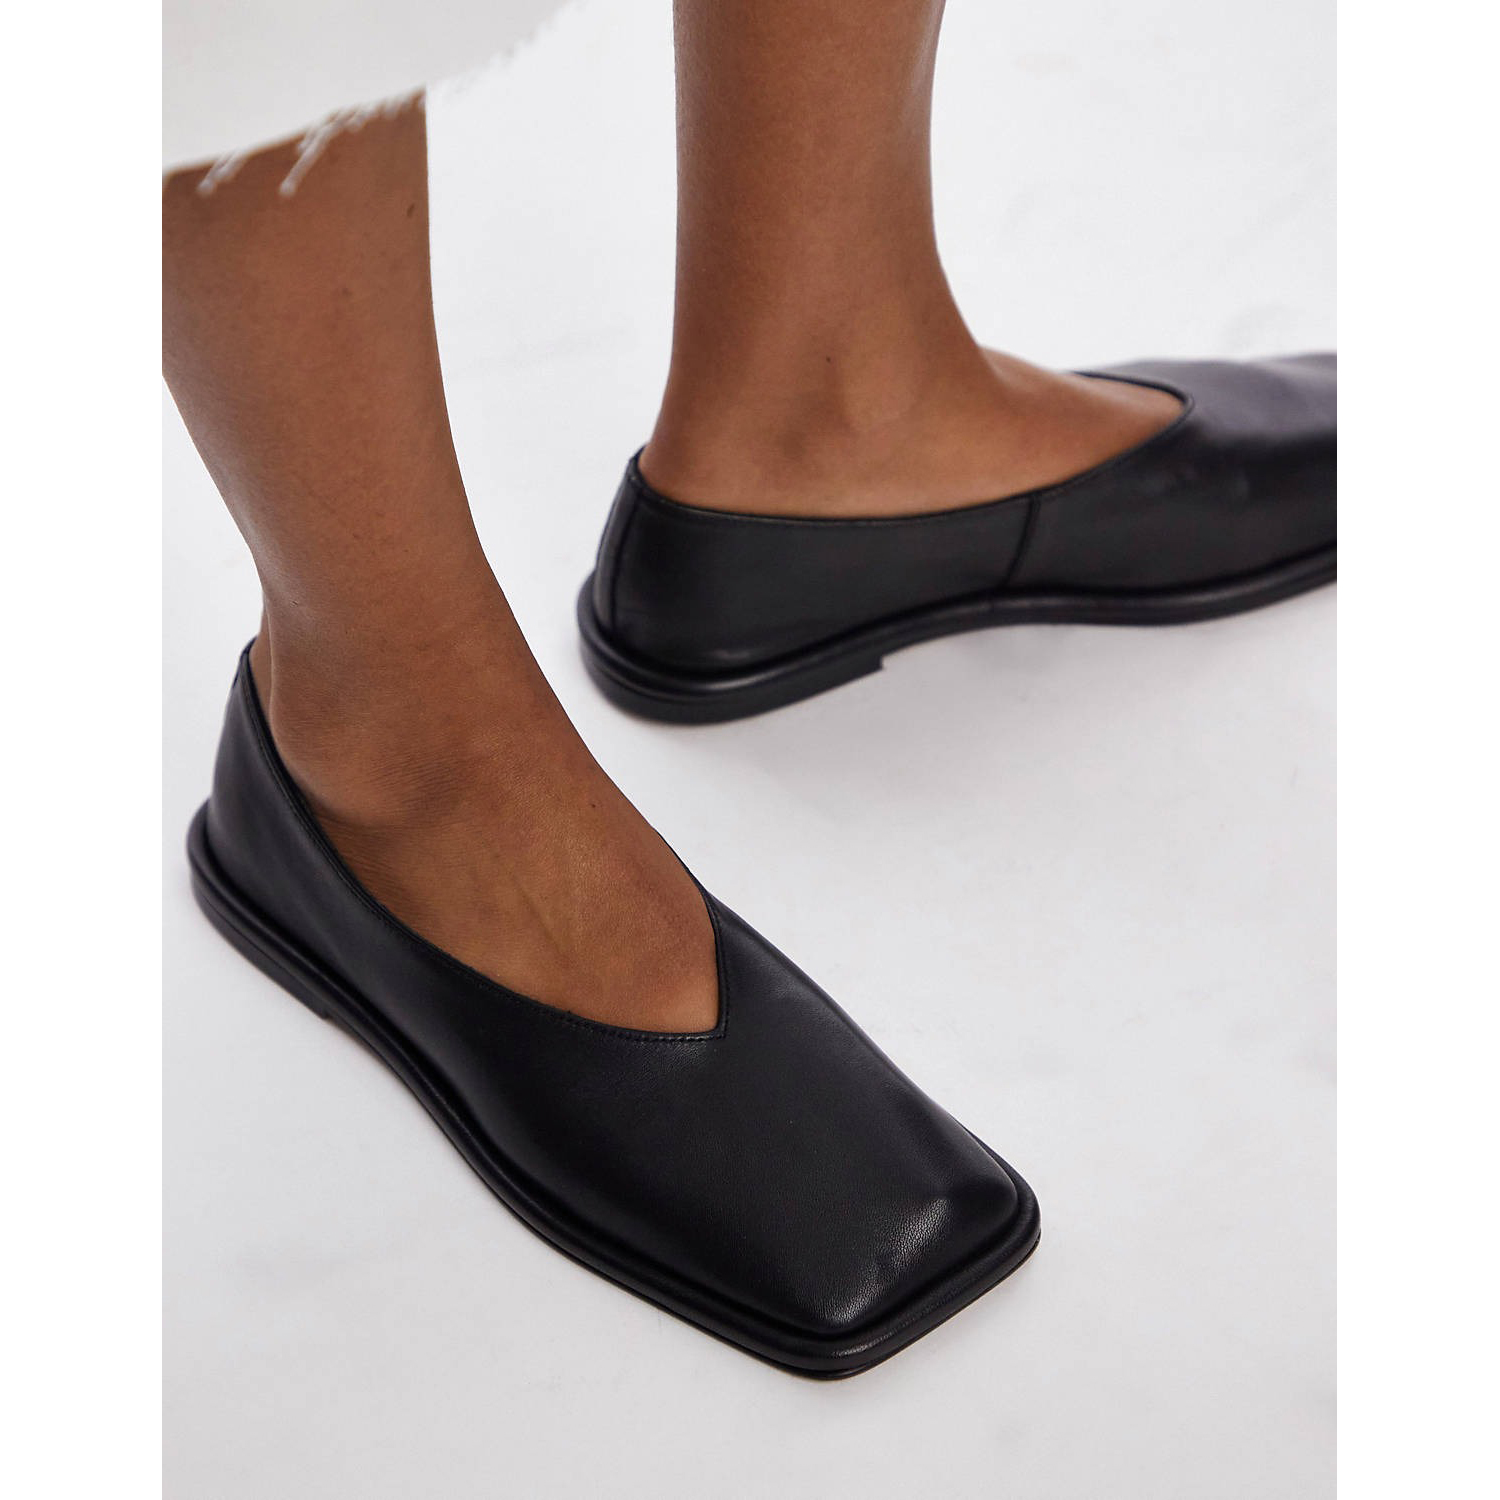 Туфли Topshop Charlotte Leather Square Toe Unlined Flat, черный туфли кожаные без задника на плоской подошве для широкой стопы размер 38 45 40 черный